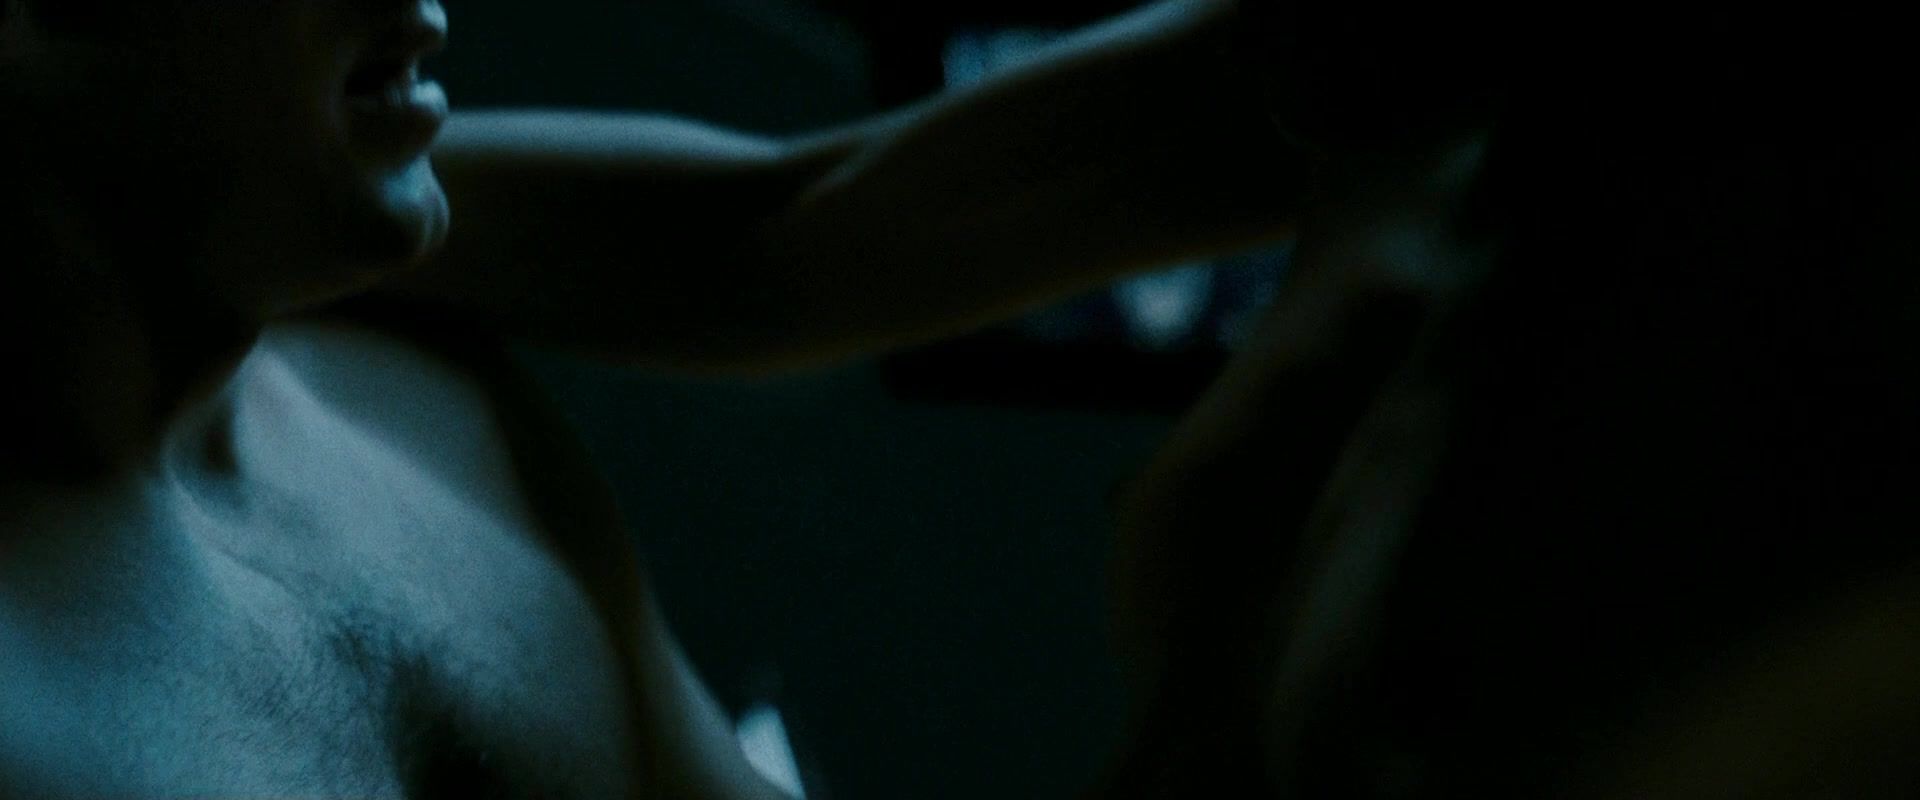 Socks Malin Akerman, Carla Gugino naked - Watchmen (2009) Rough Sex